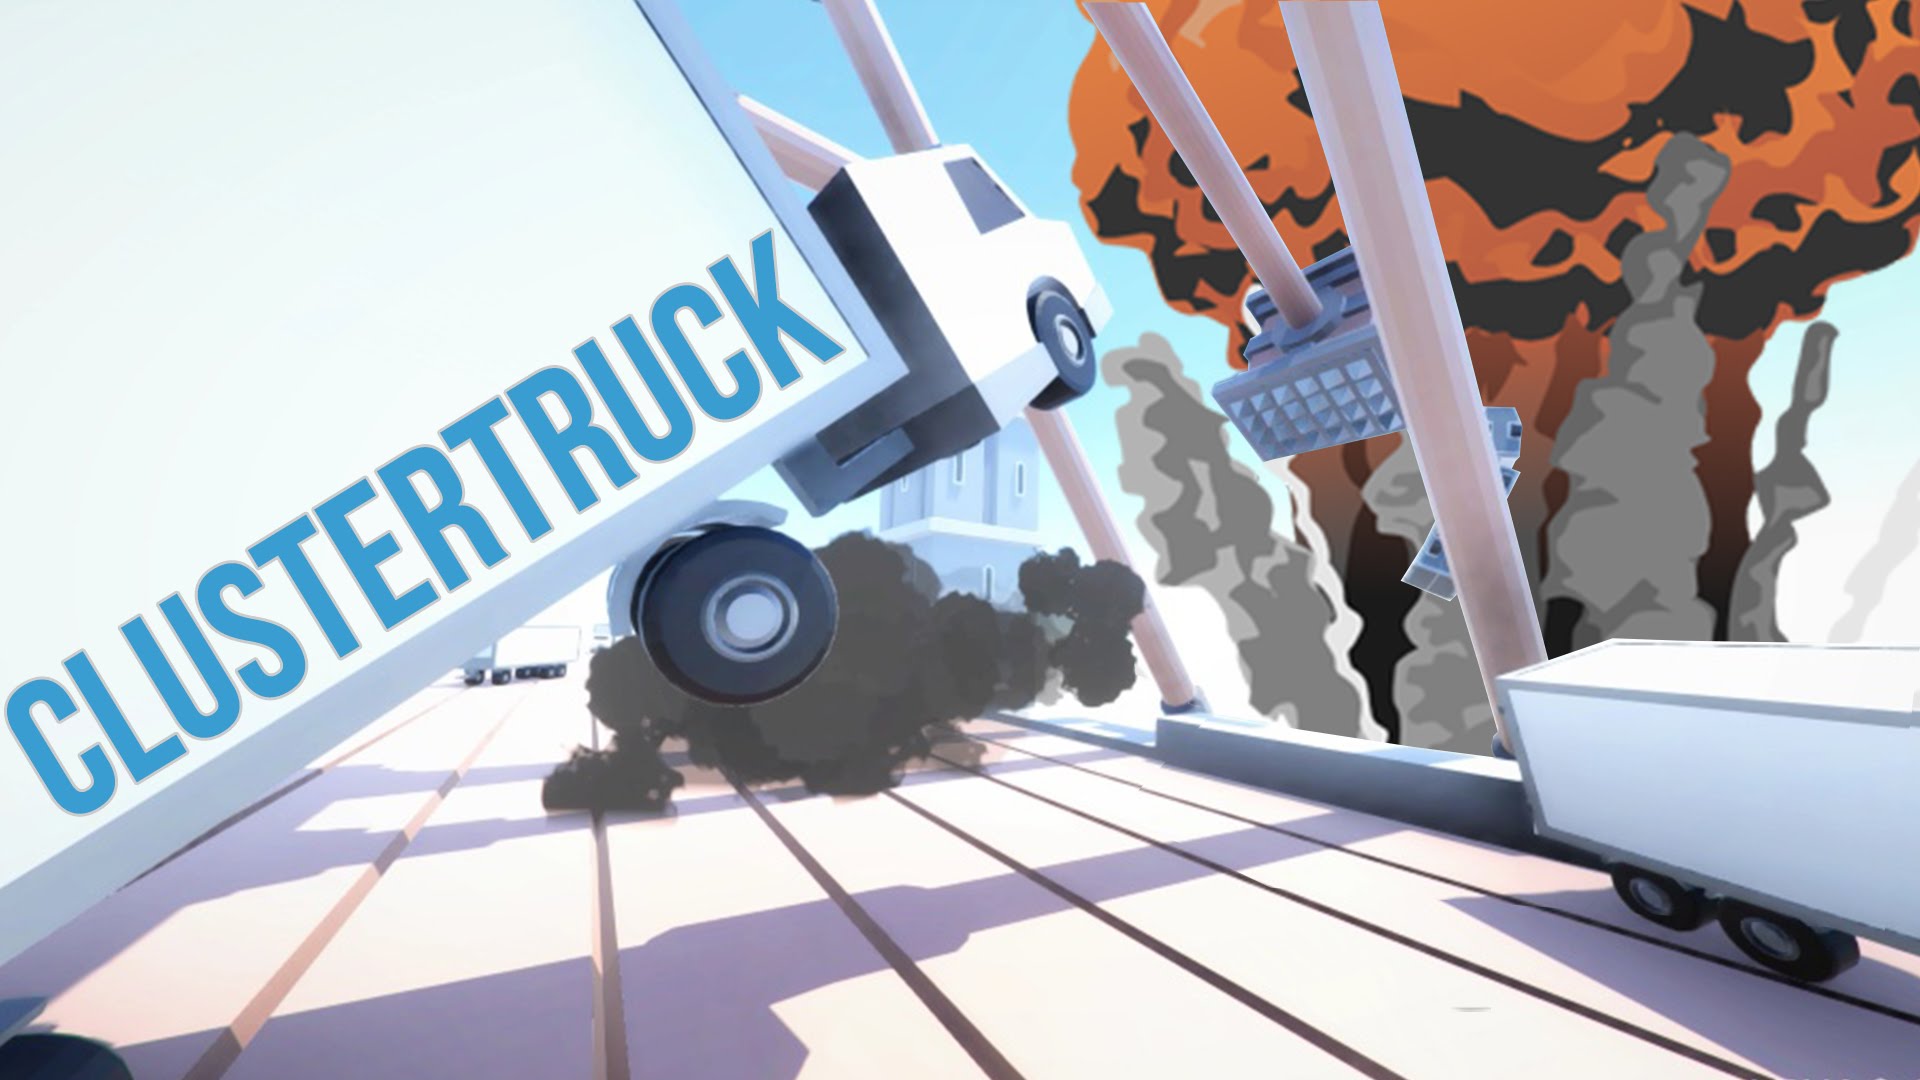 Analizamos Clustertruck, un nuevo juego ID@XBOX que nos lleva sobre ruedas